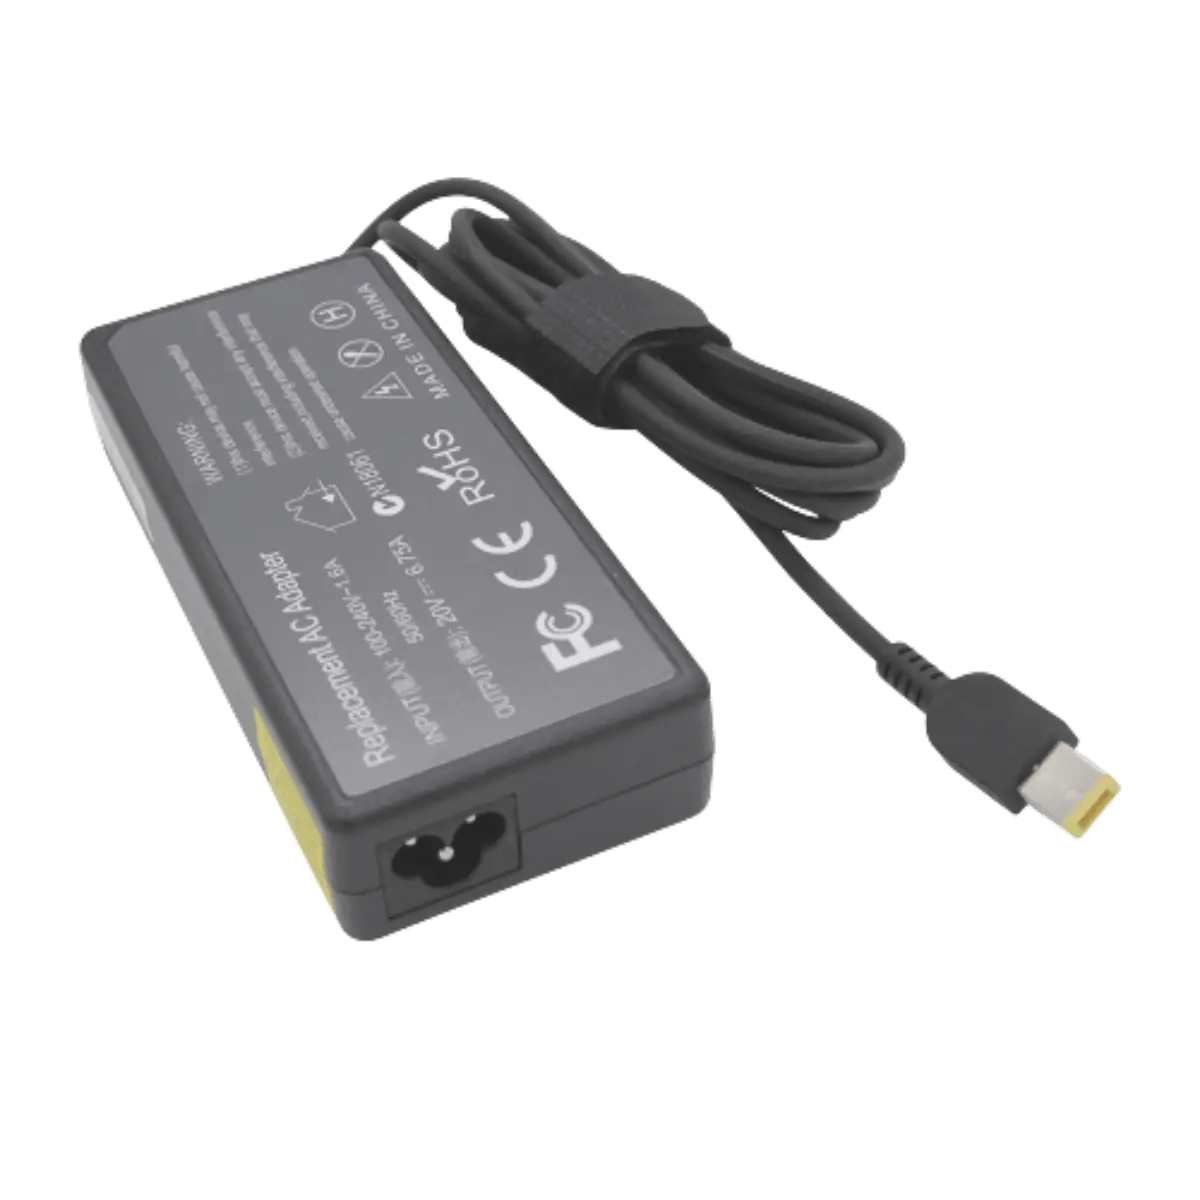 Lenovo Chargeur pc portable USB ORIGINAL avec Câble secteur 20V-65